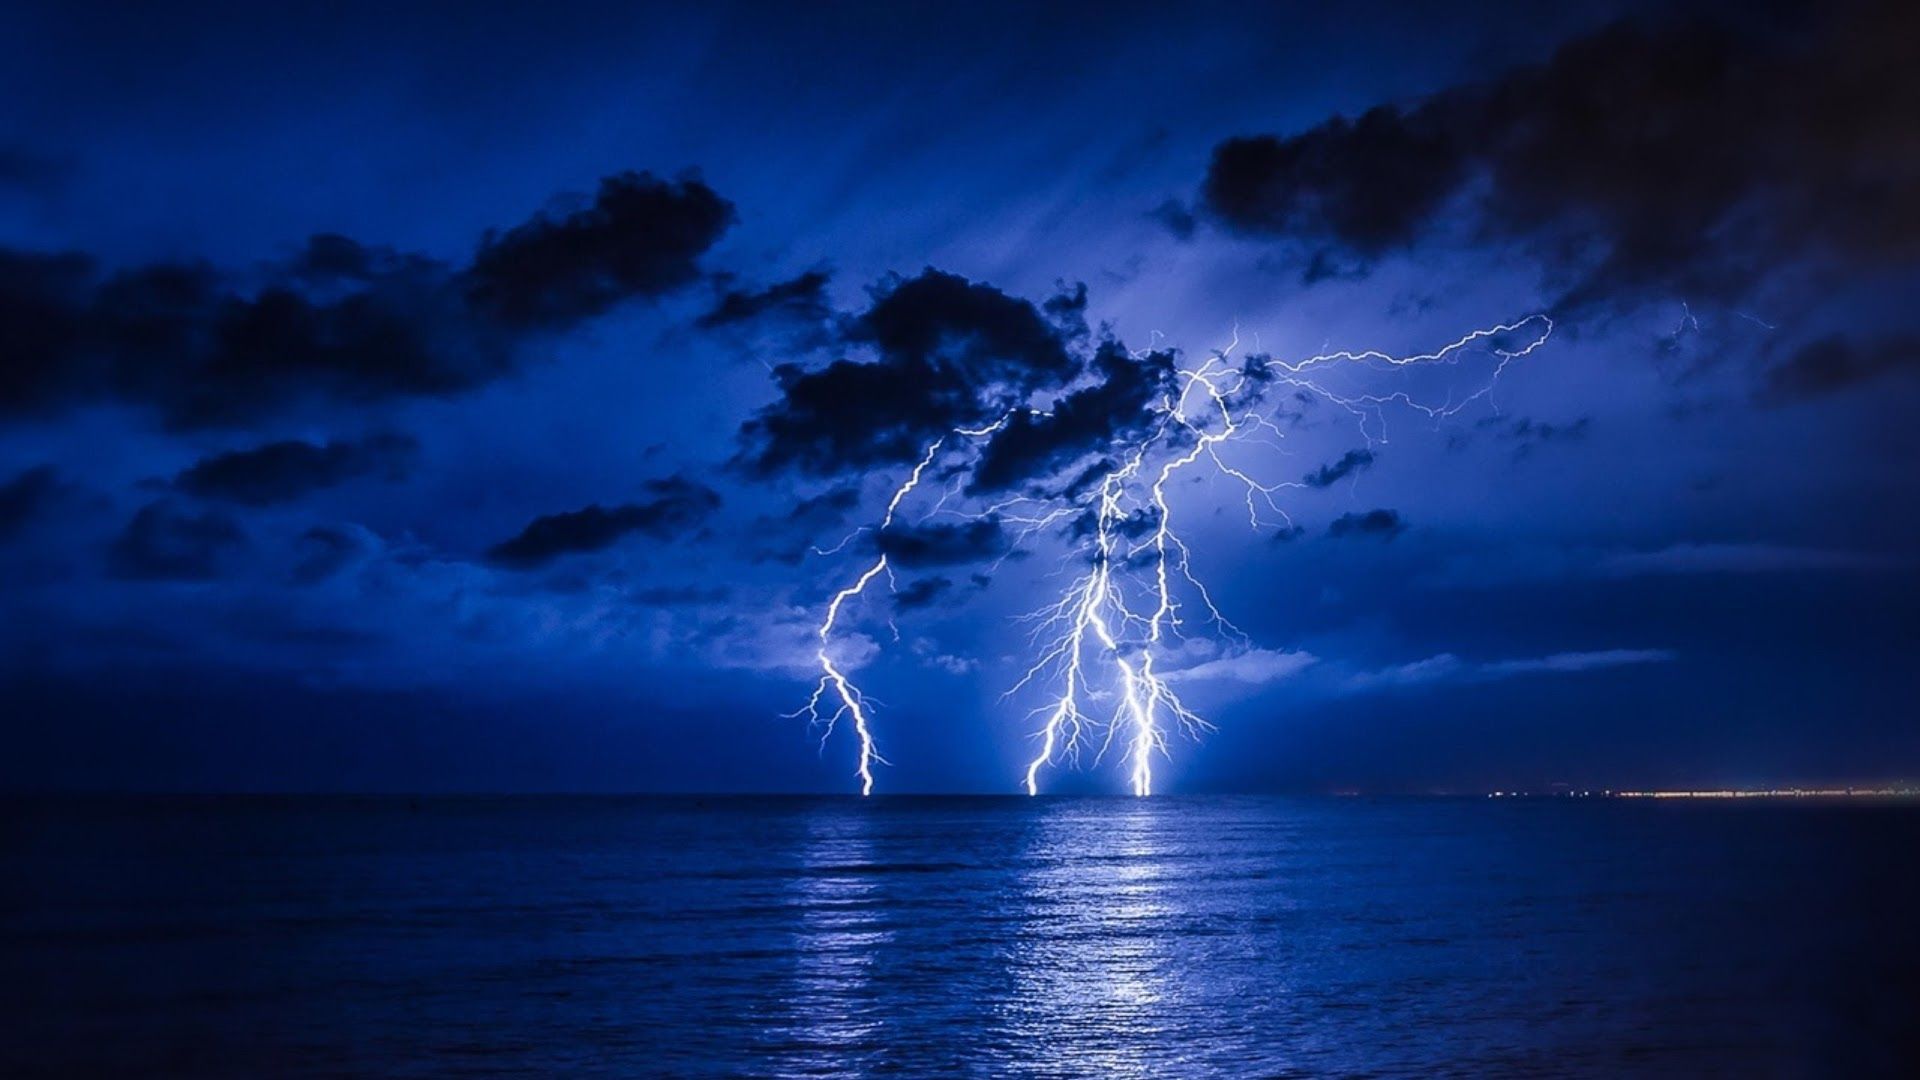 Lightning strikes over the ocean at night - Lightning